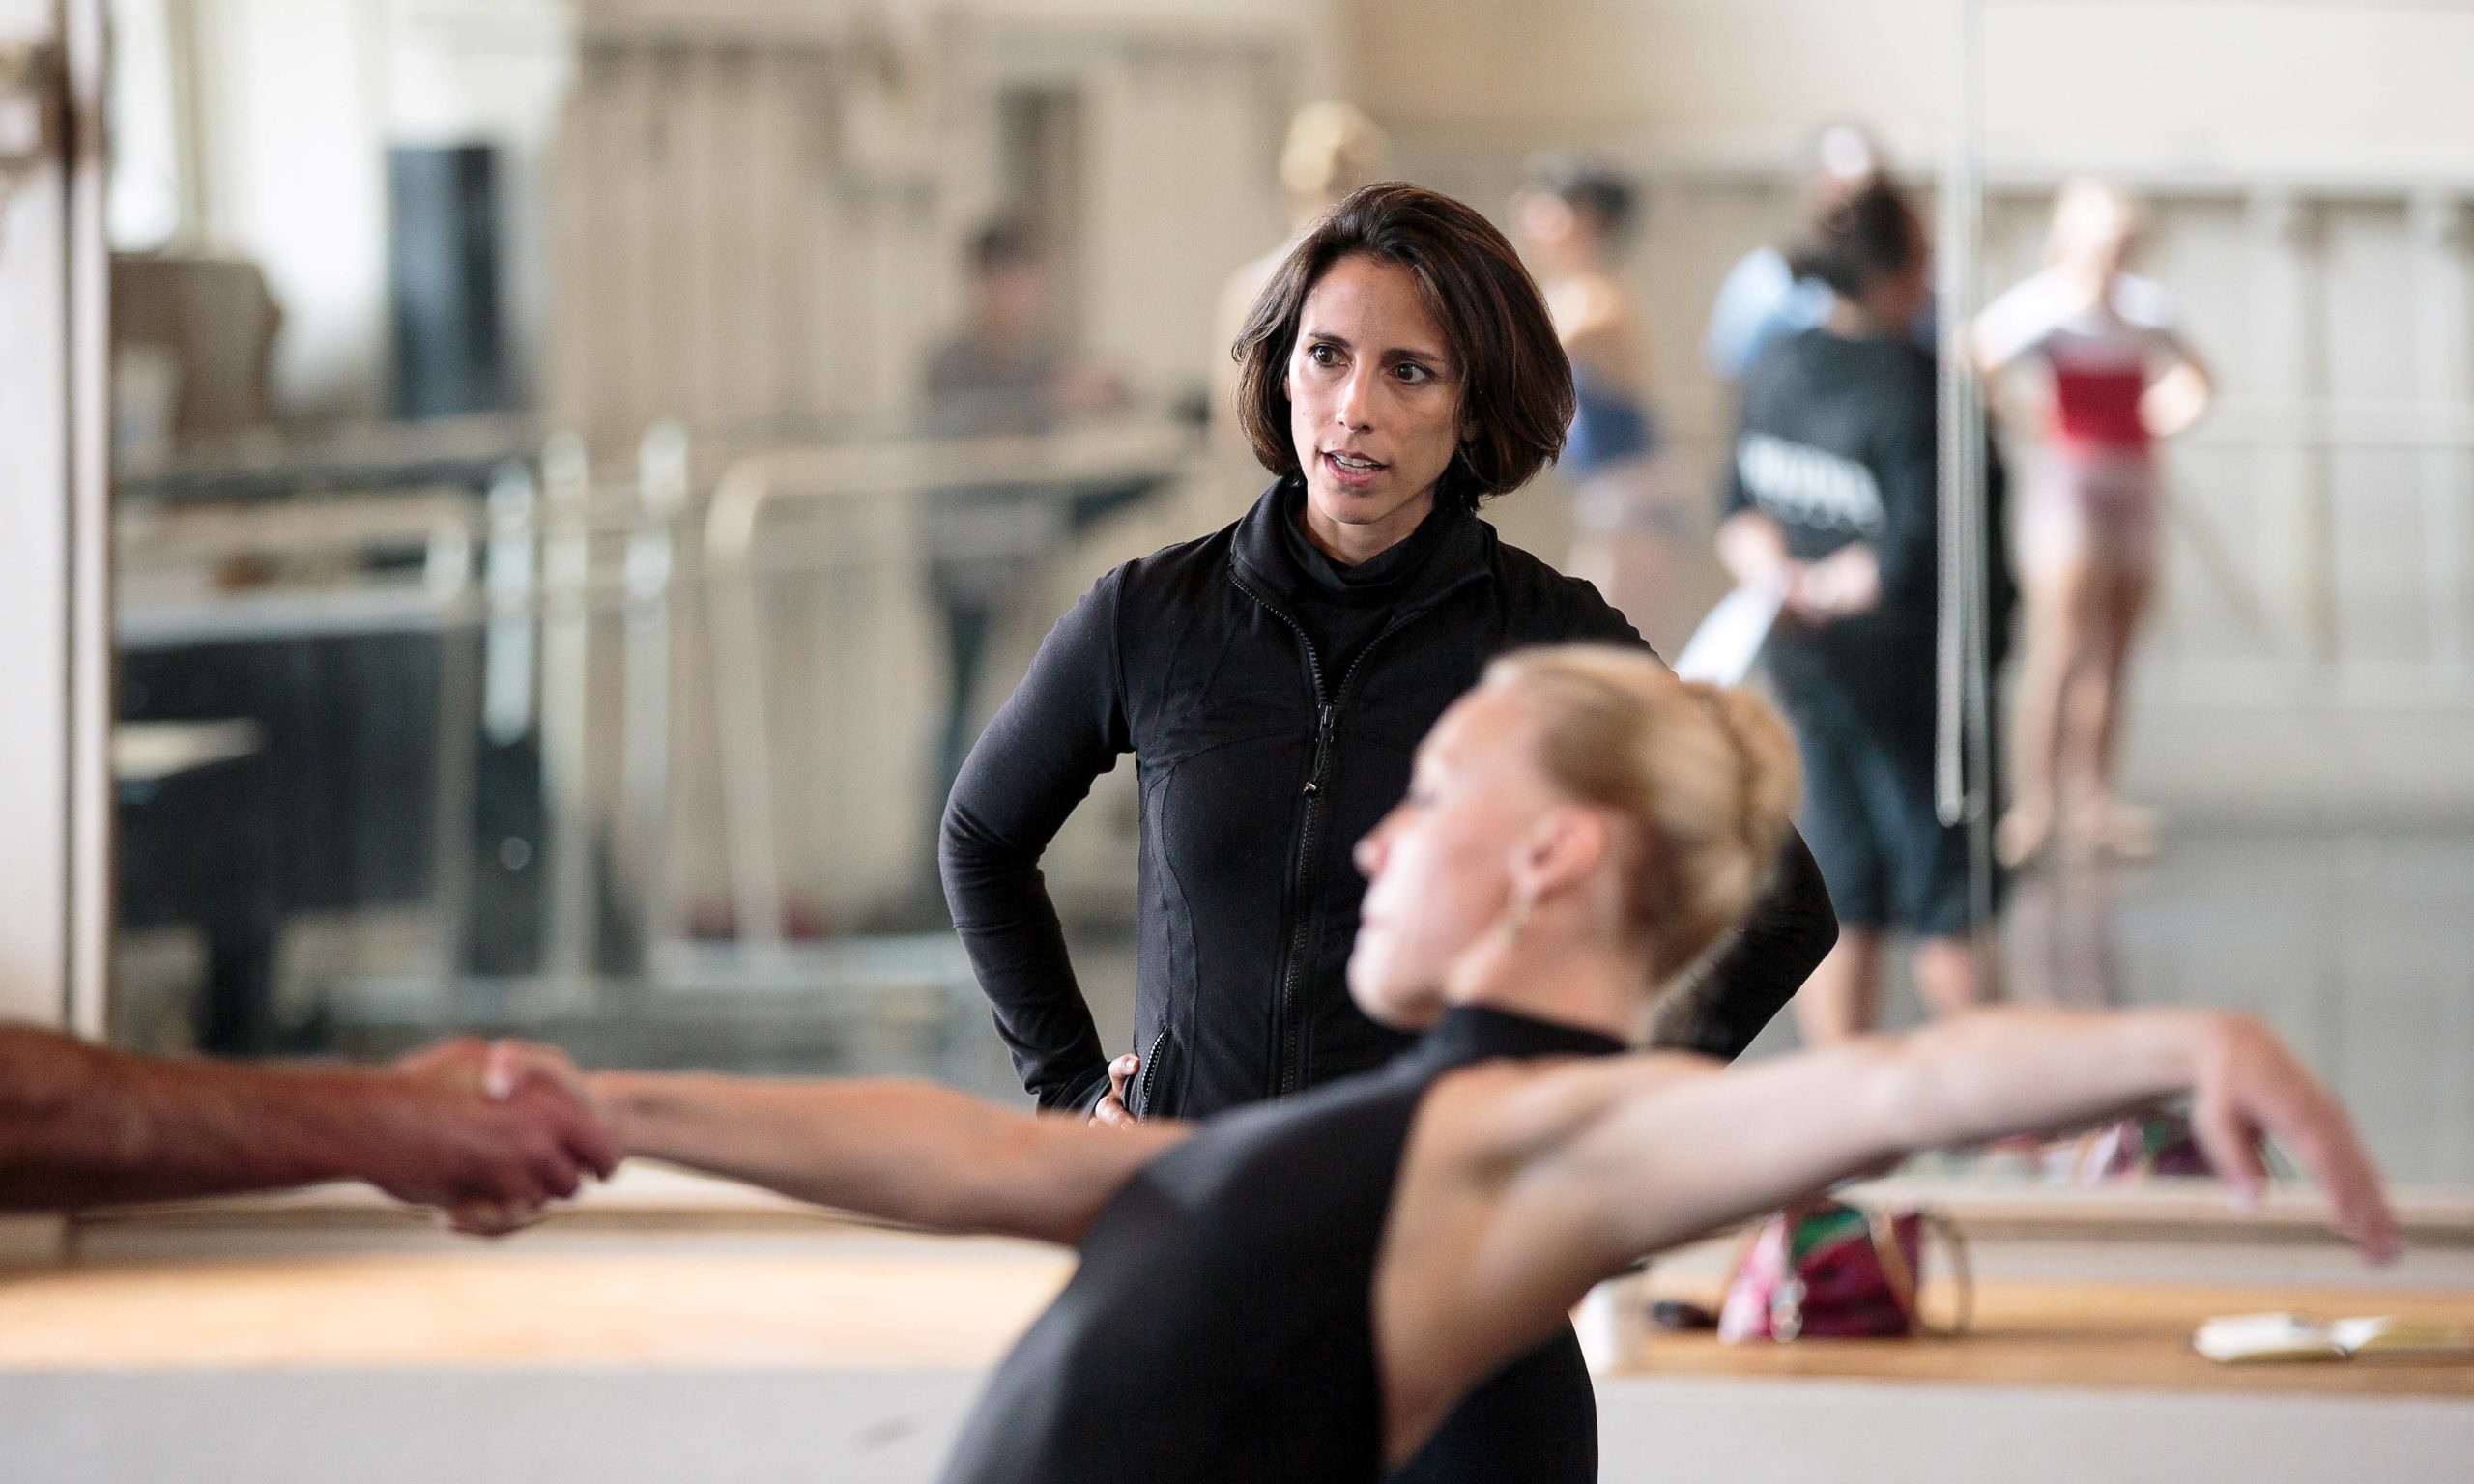 NEXT AT THE KENNEDY CENTER: Ballet Hispánico's Doña Perón